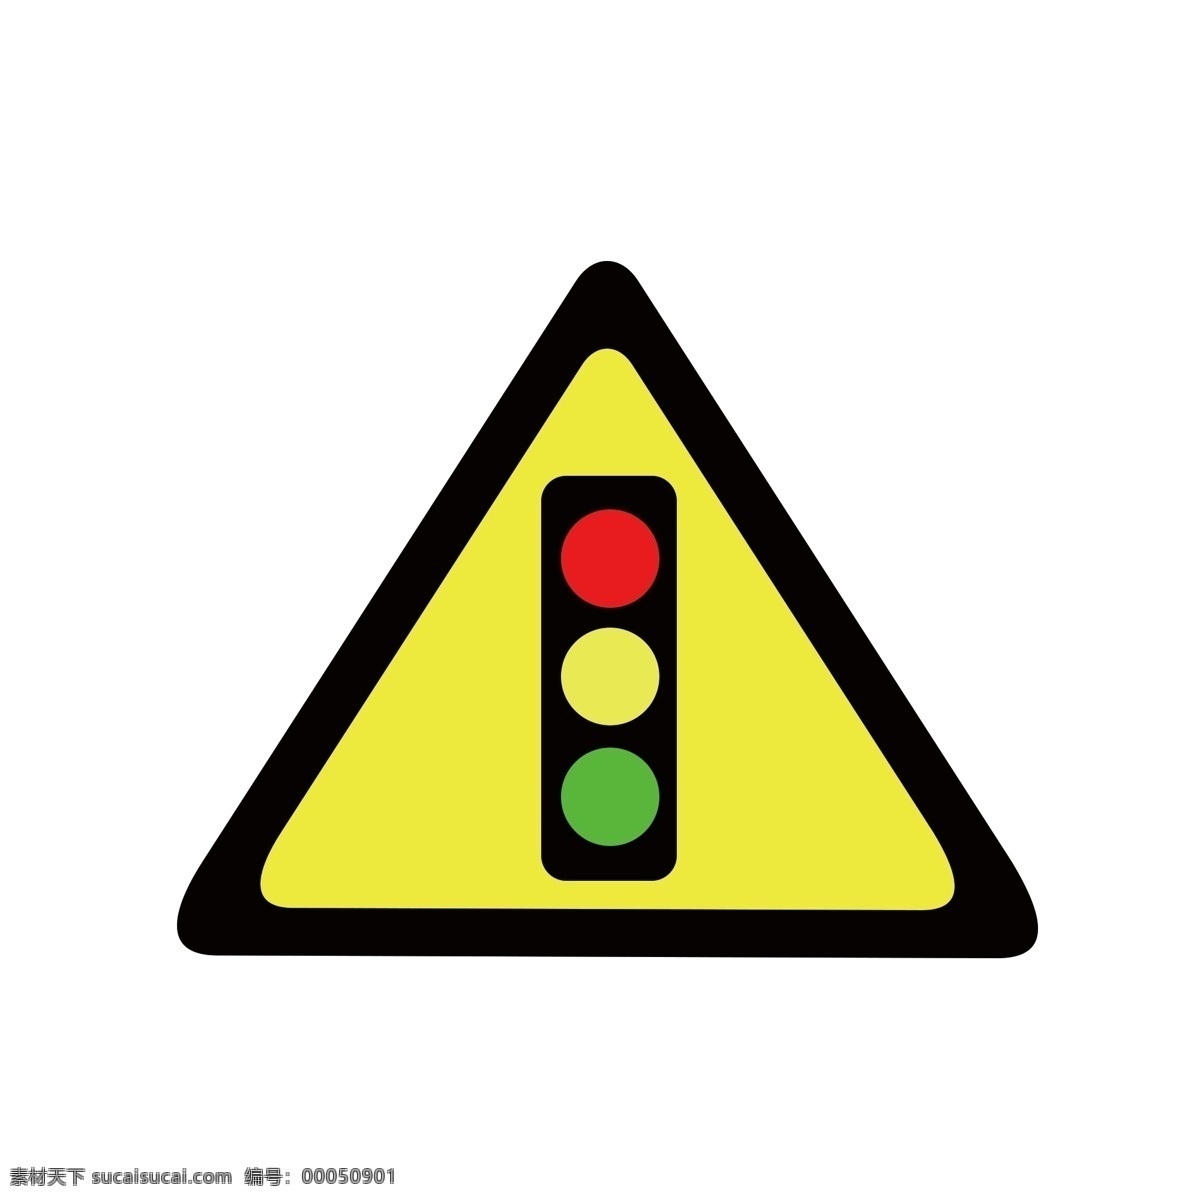 过人行道标志 红绿灯标志 图标 标志 标识 示意牌 指示牌 示意图 指示图 卡通 矢量 标识标志图标 小图标 图标标识 标识标牌